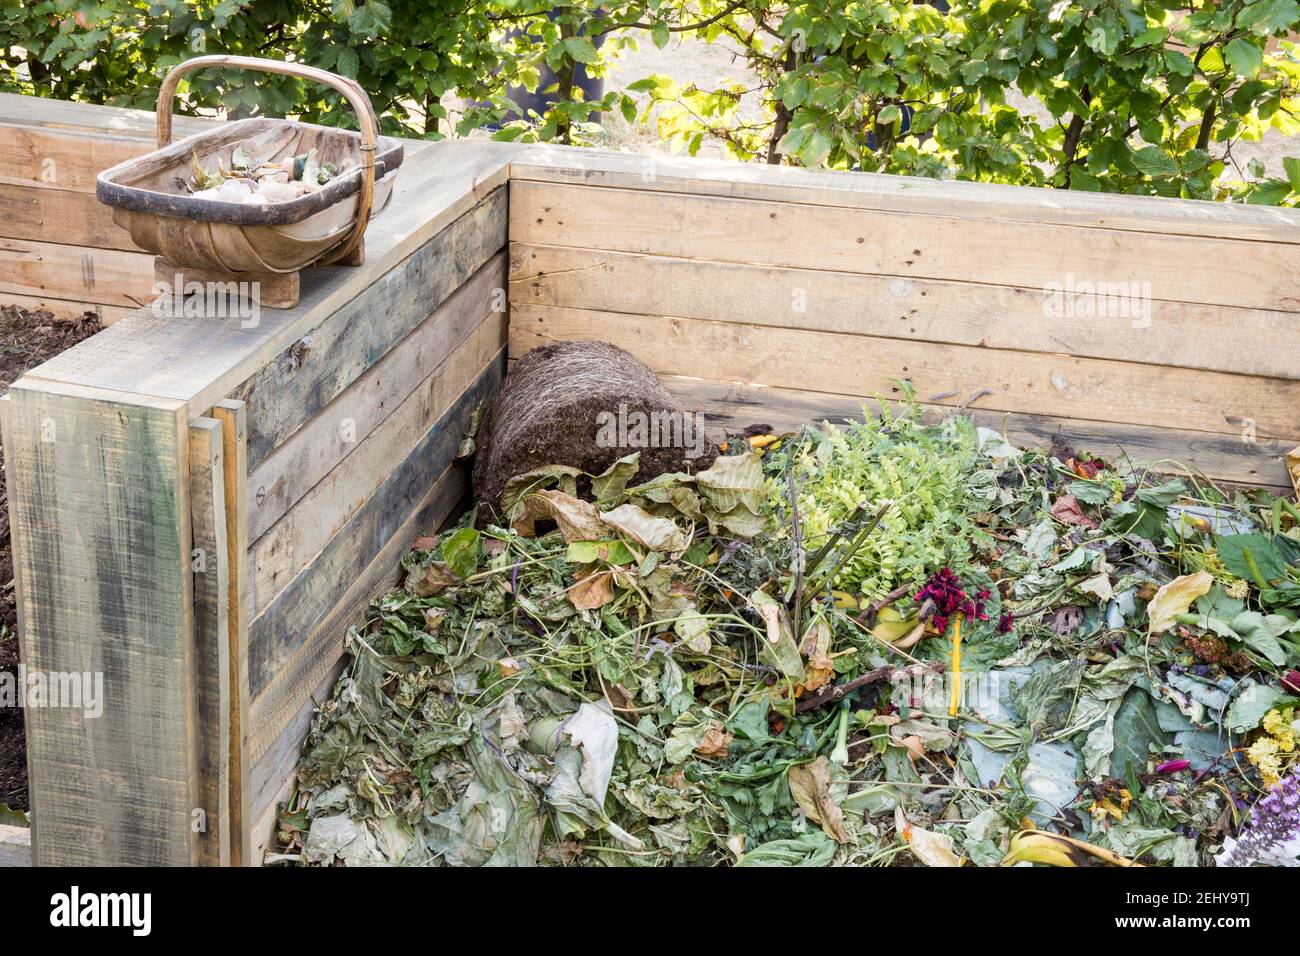 Komposthaufen aus recycelten alten Holzpaletten - Abfalleimer mit Gartenabfällen, aus dem man kompostiert Garden Waste England GB Großbritannien Stockfoto